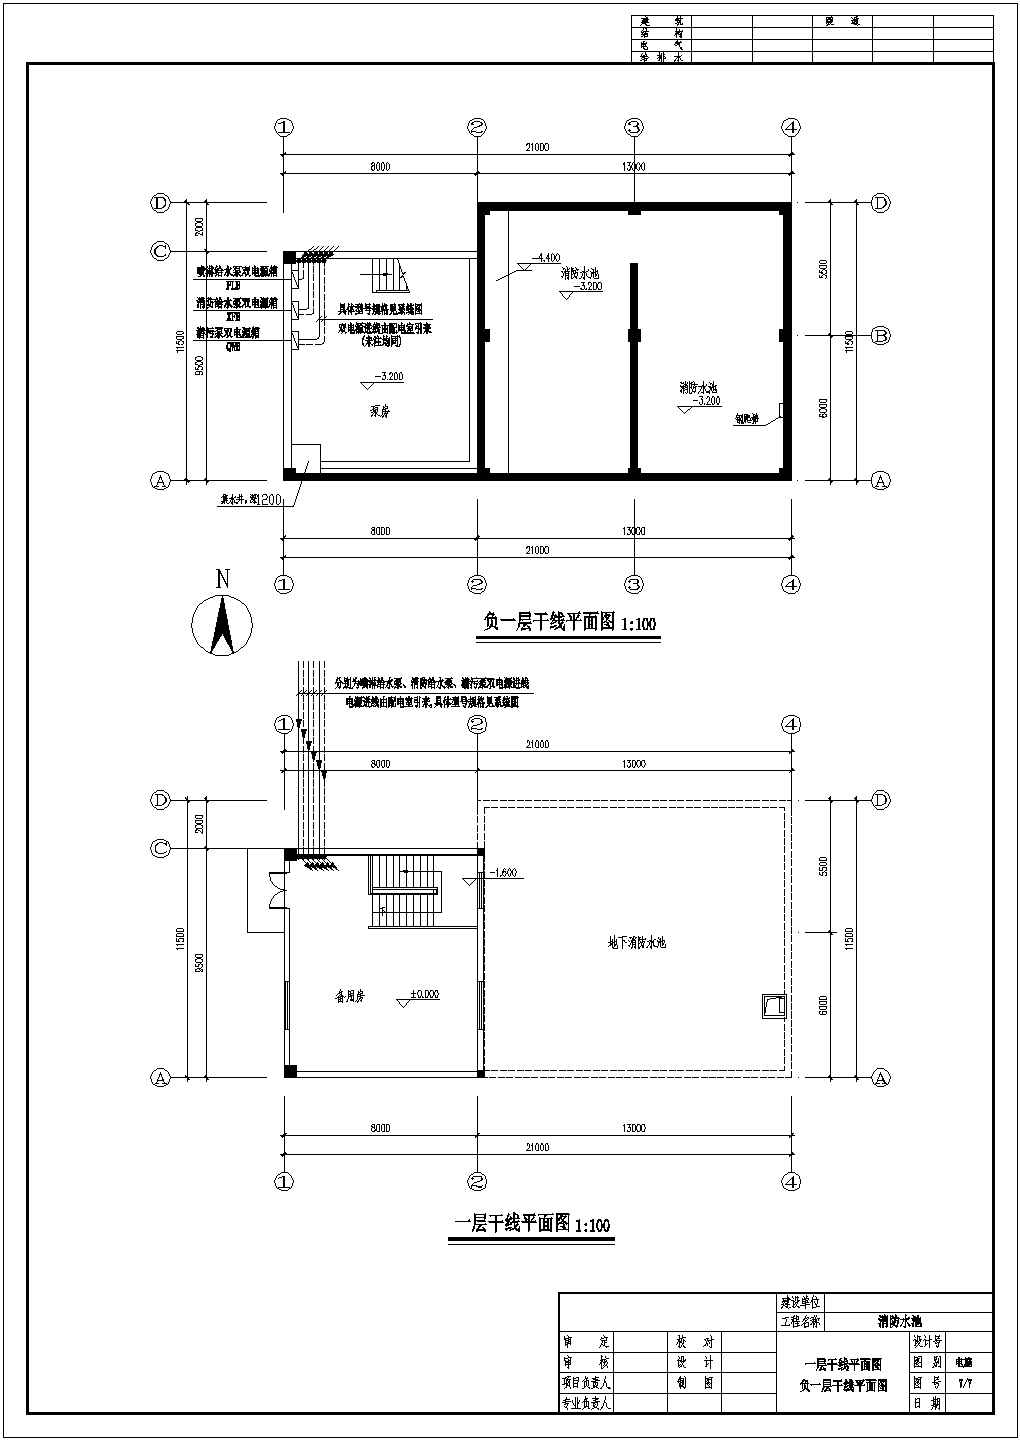 某工程消防水箱间电气图纸(二级电荷)